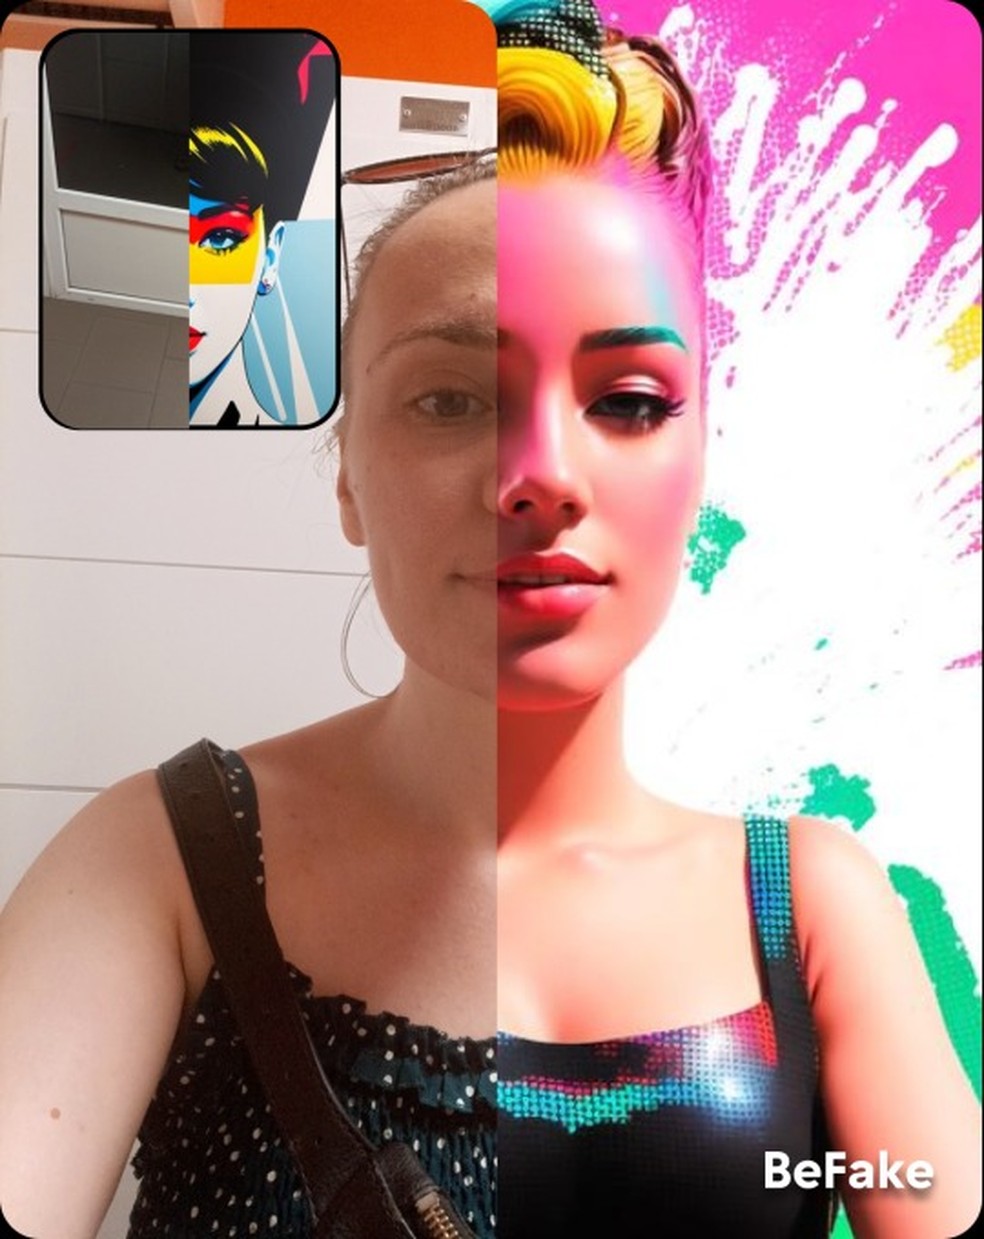 Retrato” é o app de IA que transforma selfies em fotos profissionais